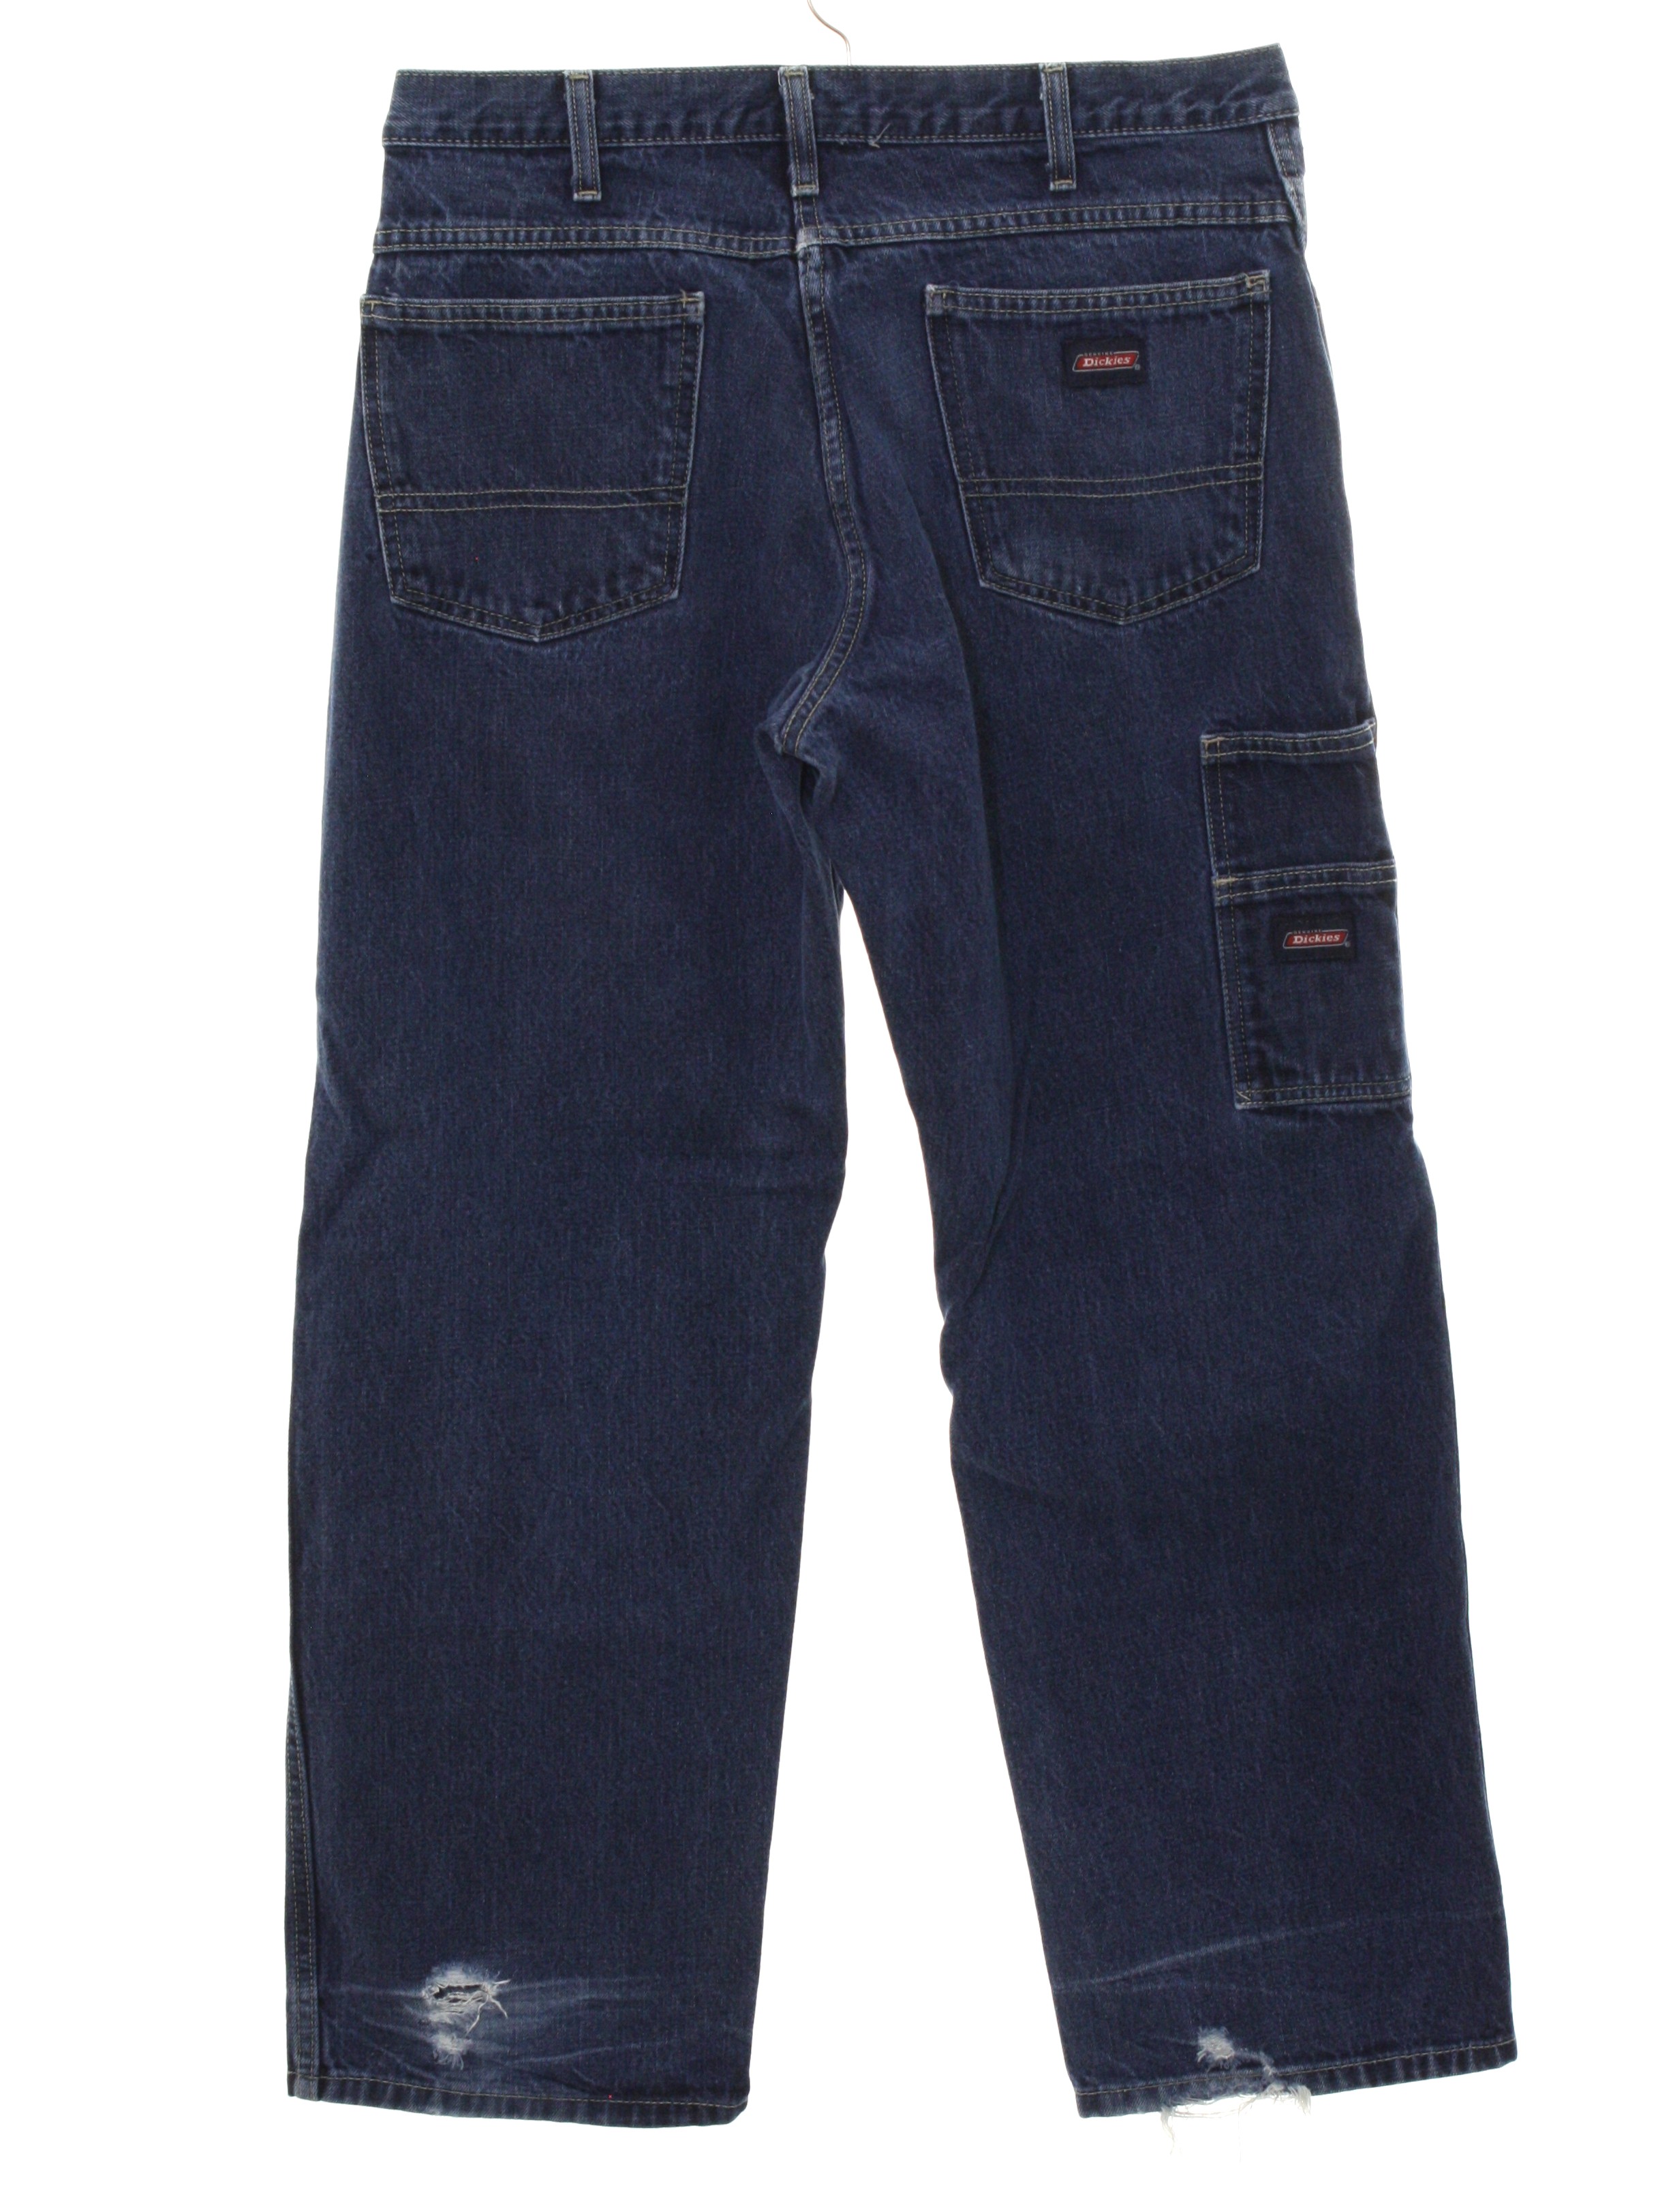 Vintage 1990's Pants: Late 90s -Dickies-- Mens dark blue cotton denim ...